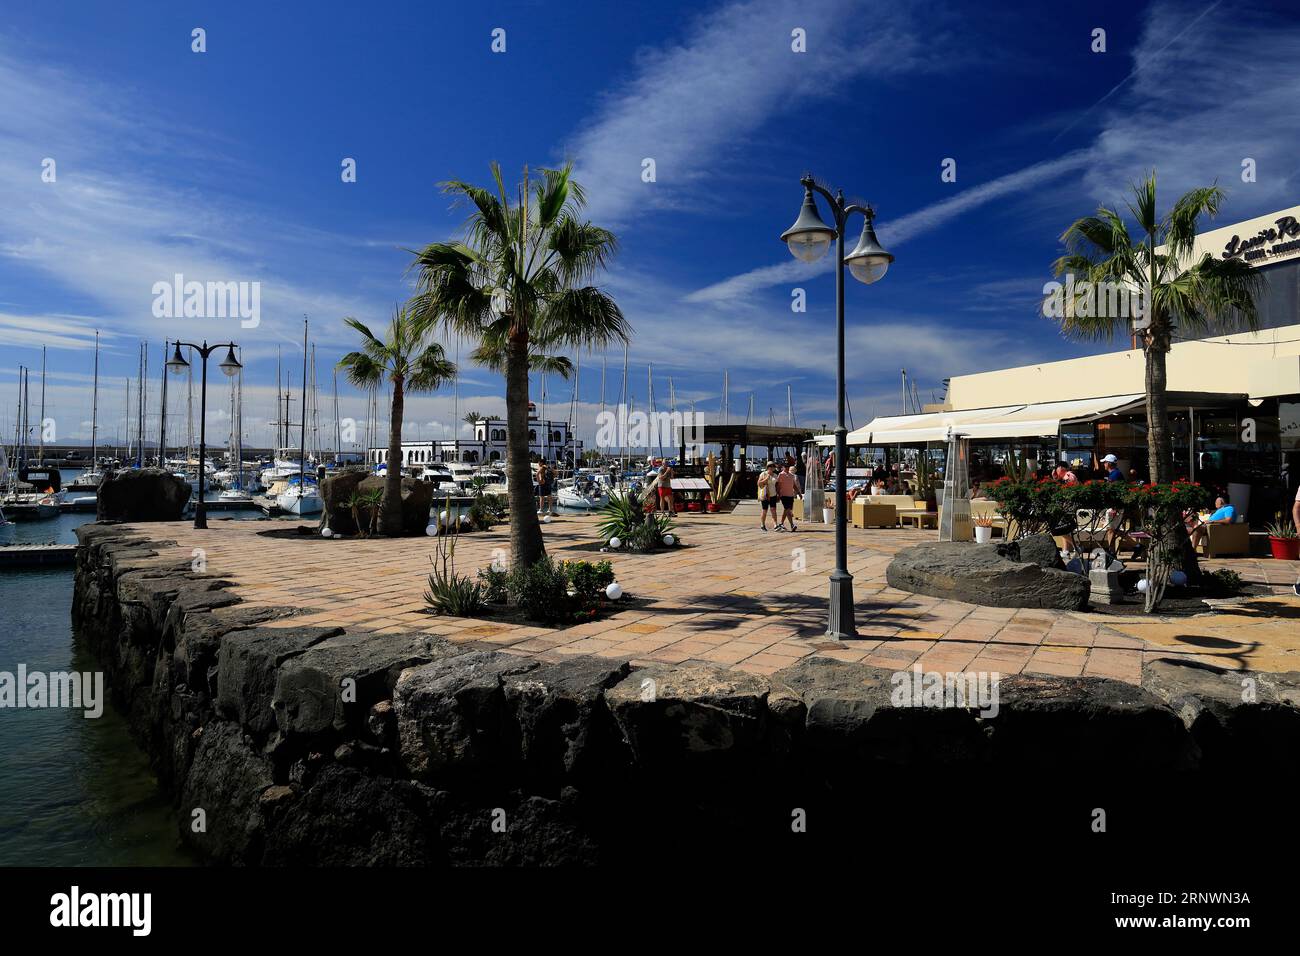 Entspannte Szene im Marina Rubicon mit Touristen, verschiedenen Cafés und Bars. Playa Blanca, Lanzarote, Kanarische Inseln, Spanien. Stockfoto